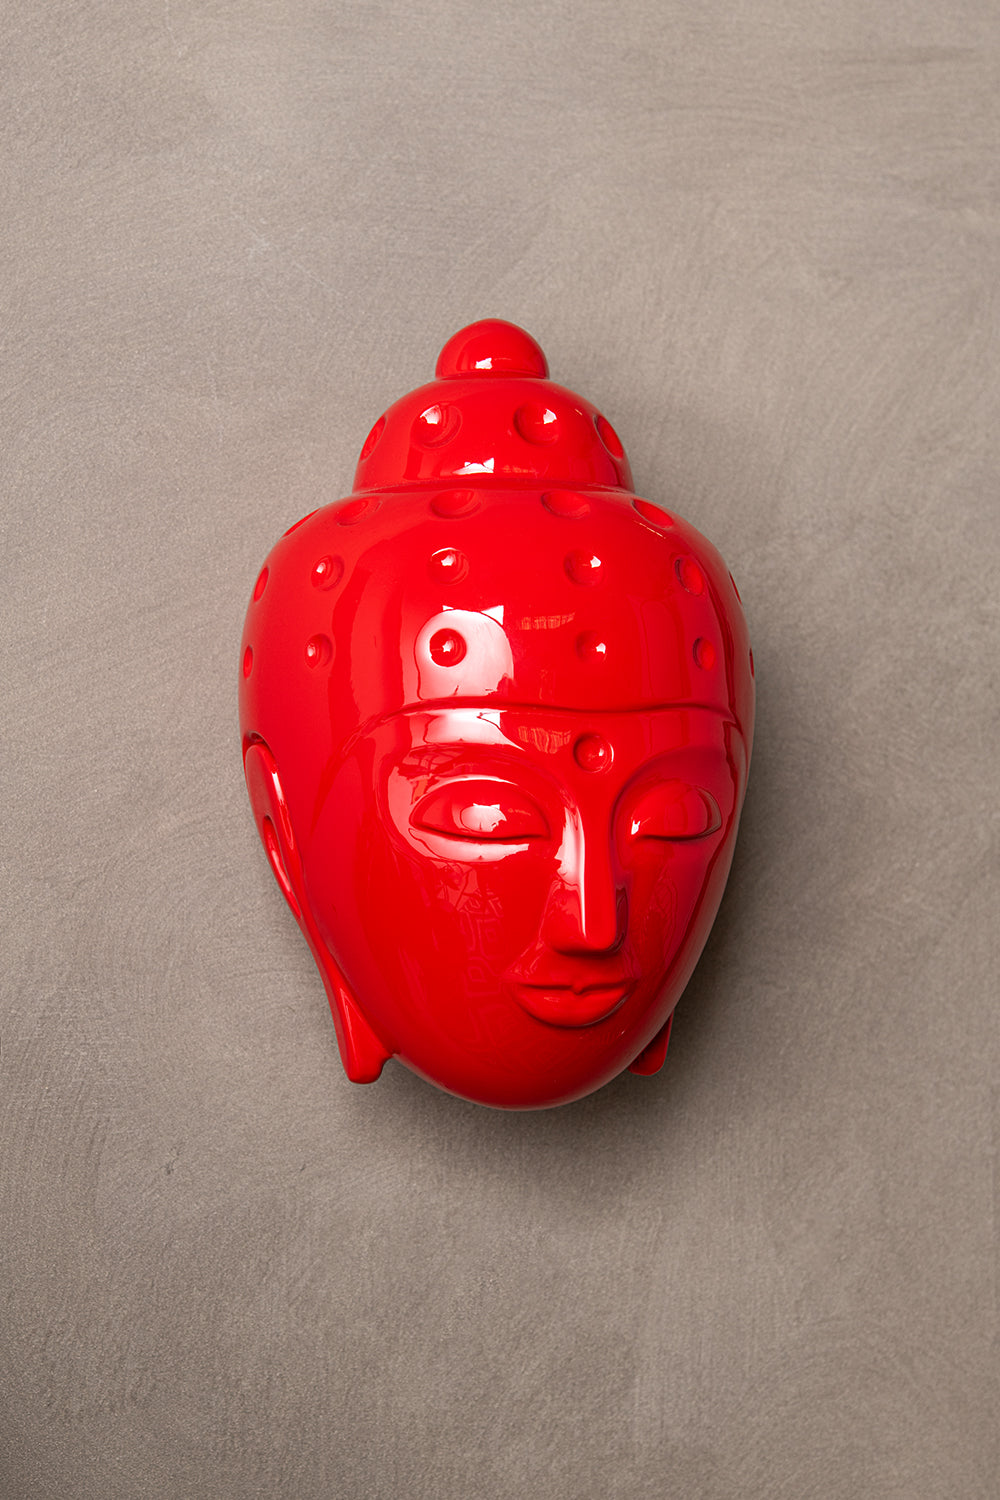 Ceramic Buddha Head Sculpture - Luminous Red